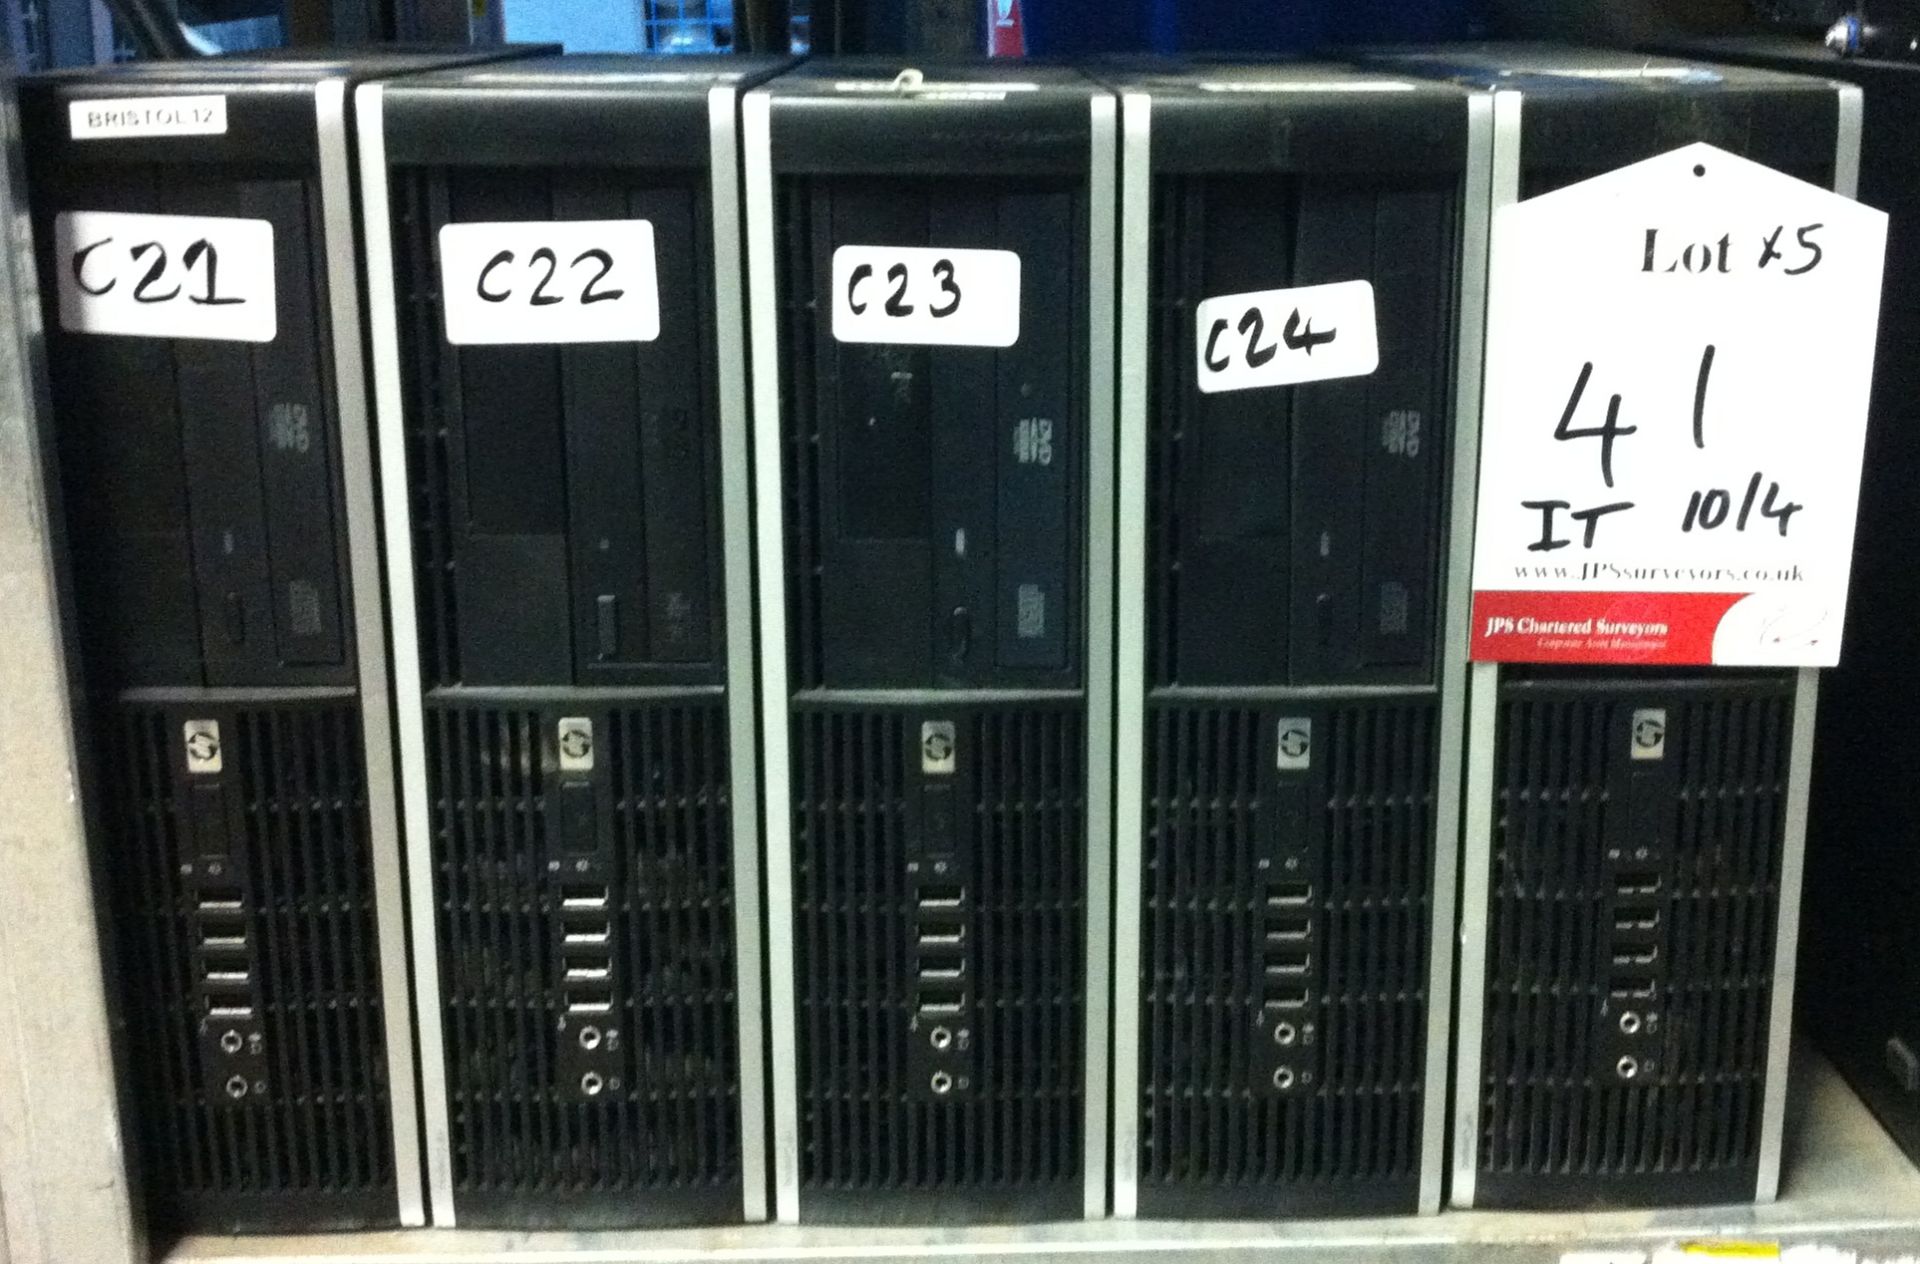 5 x HP Compaq desktop pcs; Intel core 2 duo